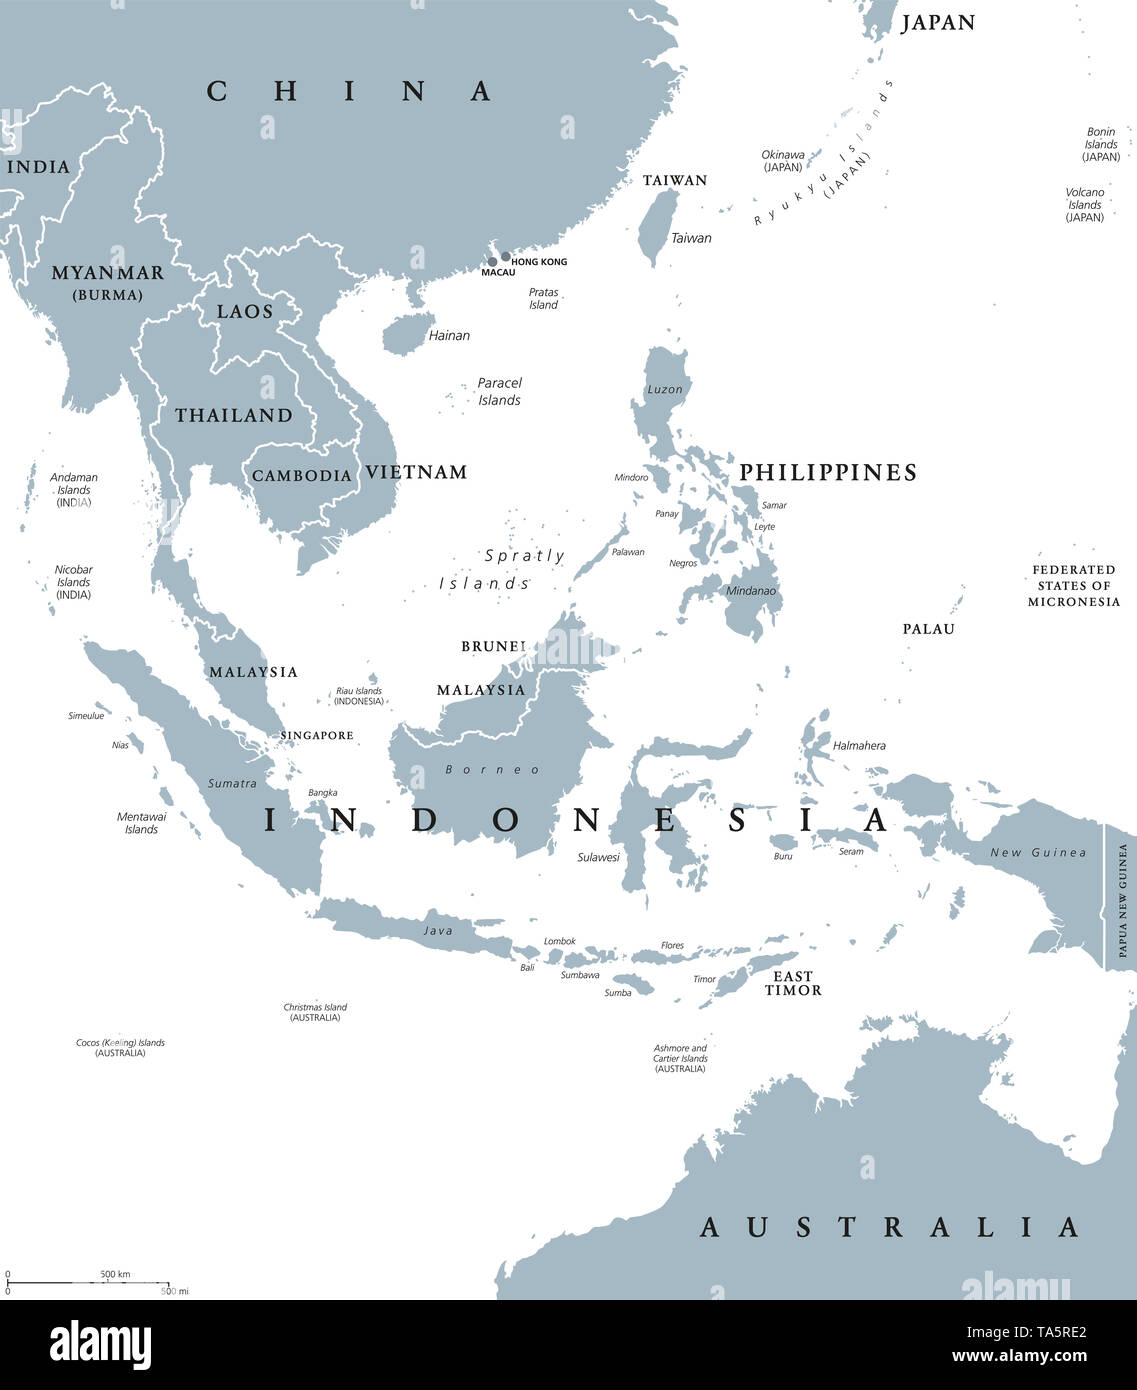 Asie du sud-est, une carte politique avec les frontières. Sous-région de l'Asie avec les pays du sud de la Chine, à l'Est de l'Inde, à l'ouest de la Nouvelle Guinée, au nord de l'Australie. Banque D'Images